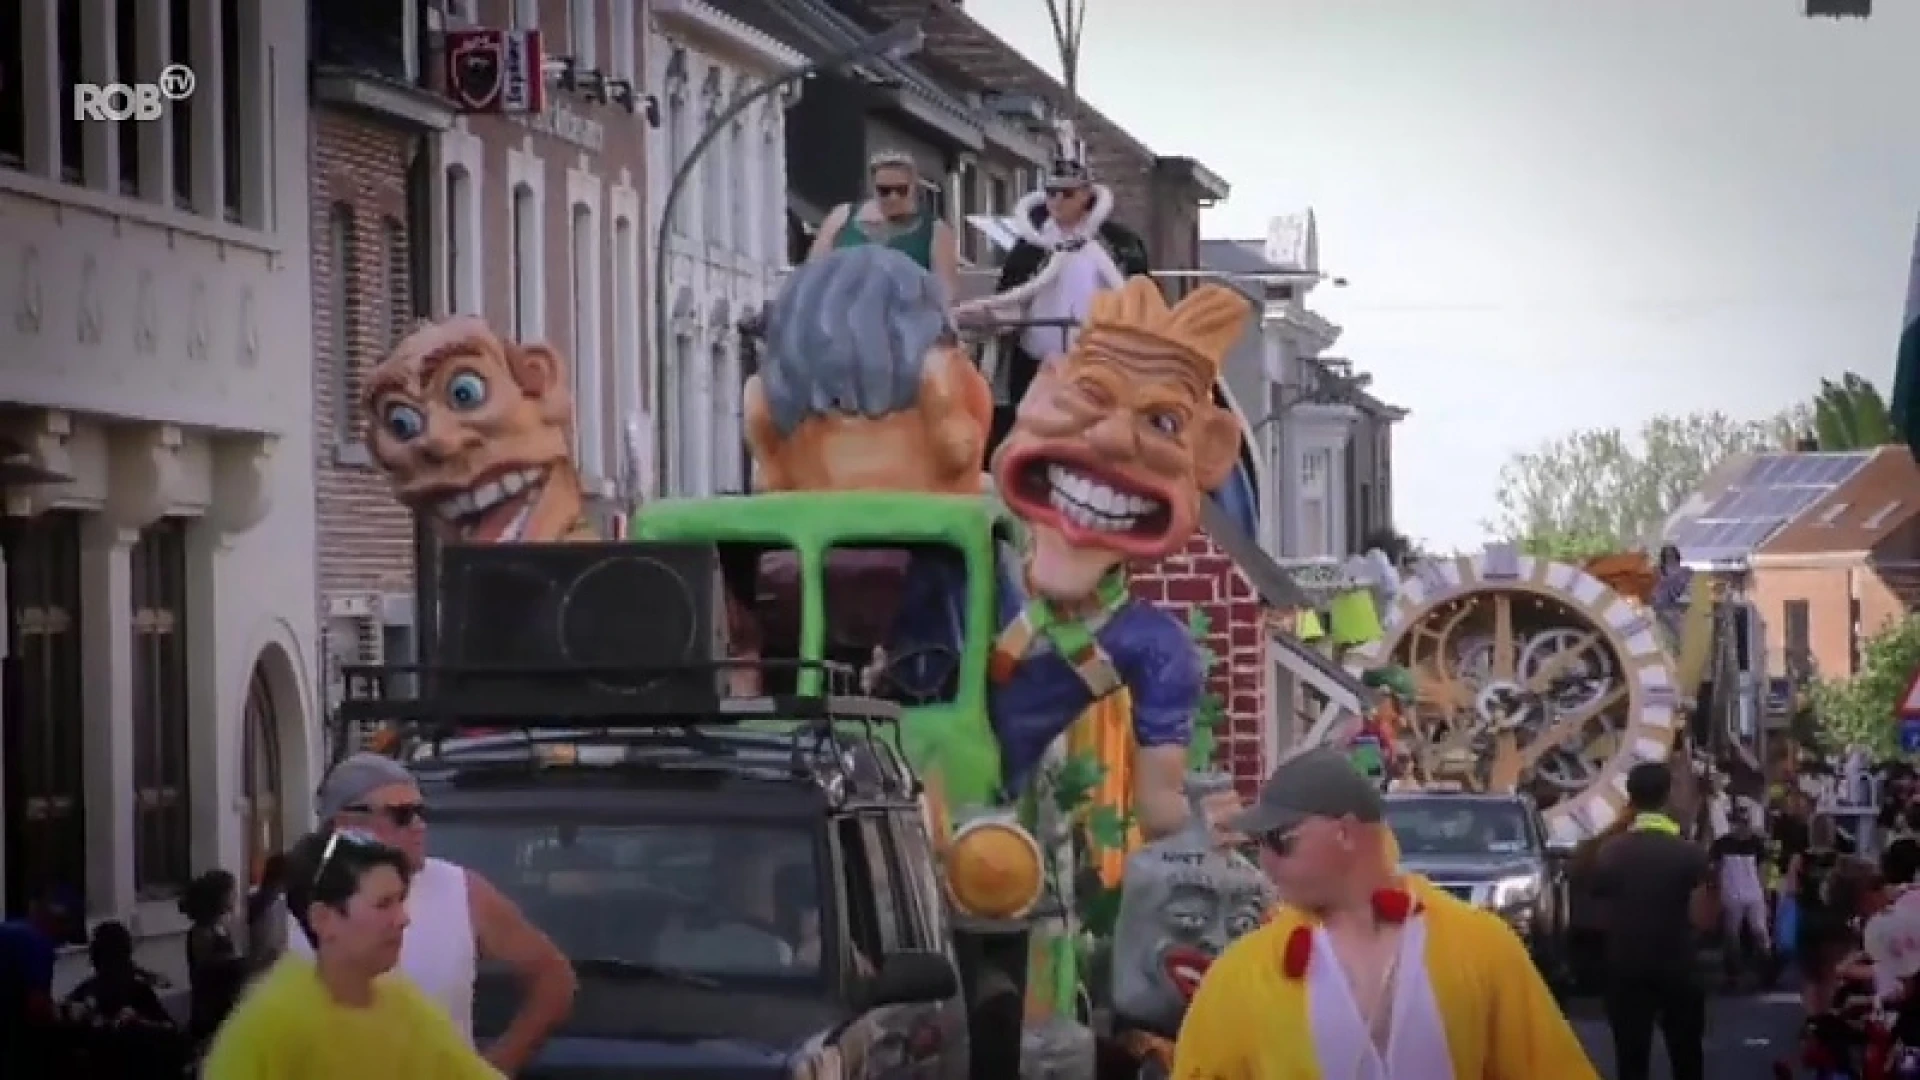 29 carnavalswagens in Landen zorgen voor veel sfeer en ambiance